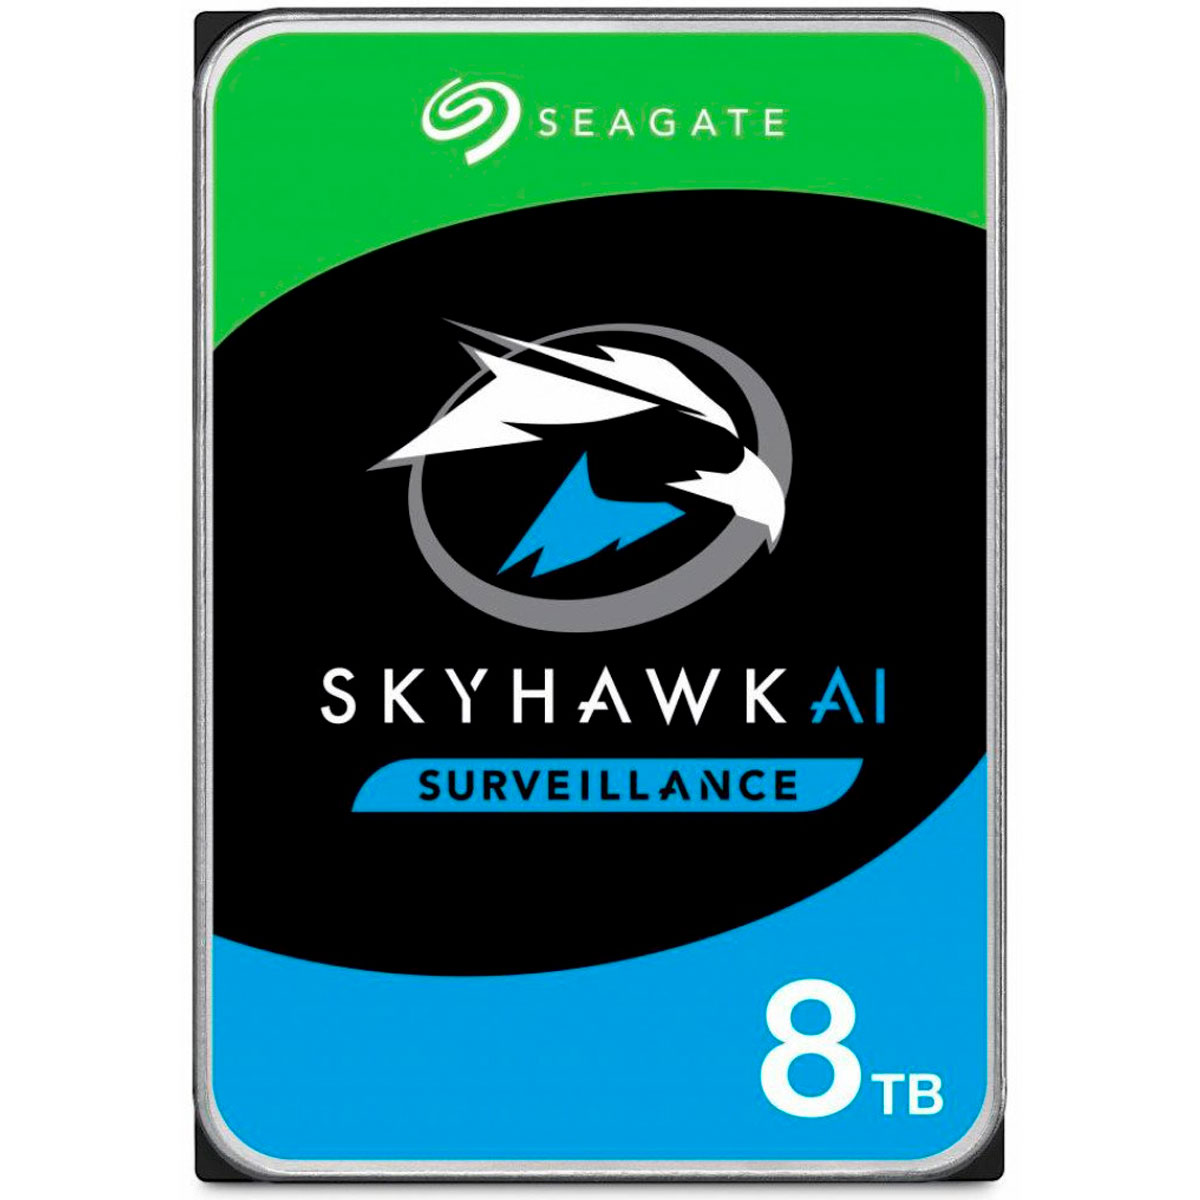 HD 8TB SATA - 7200RPM - 256MB Cache - Seagate SkyHawk AI Surveillance - ST8000VE000 - Ideal para Vigilância